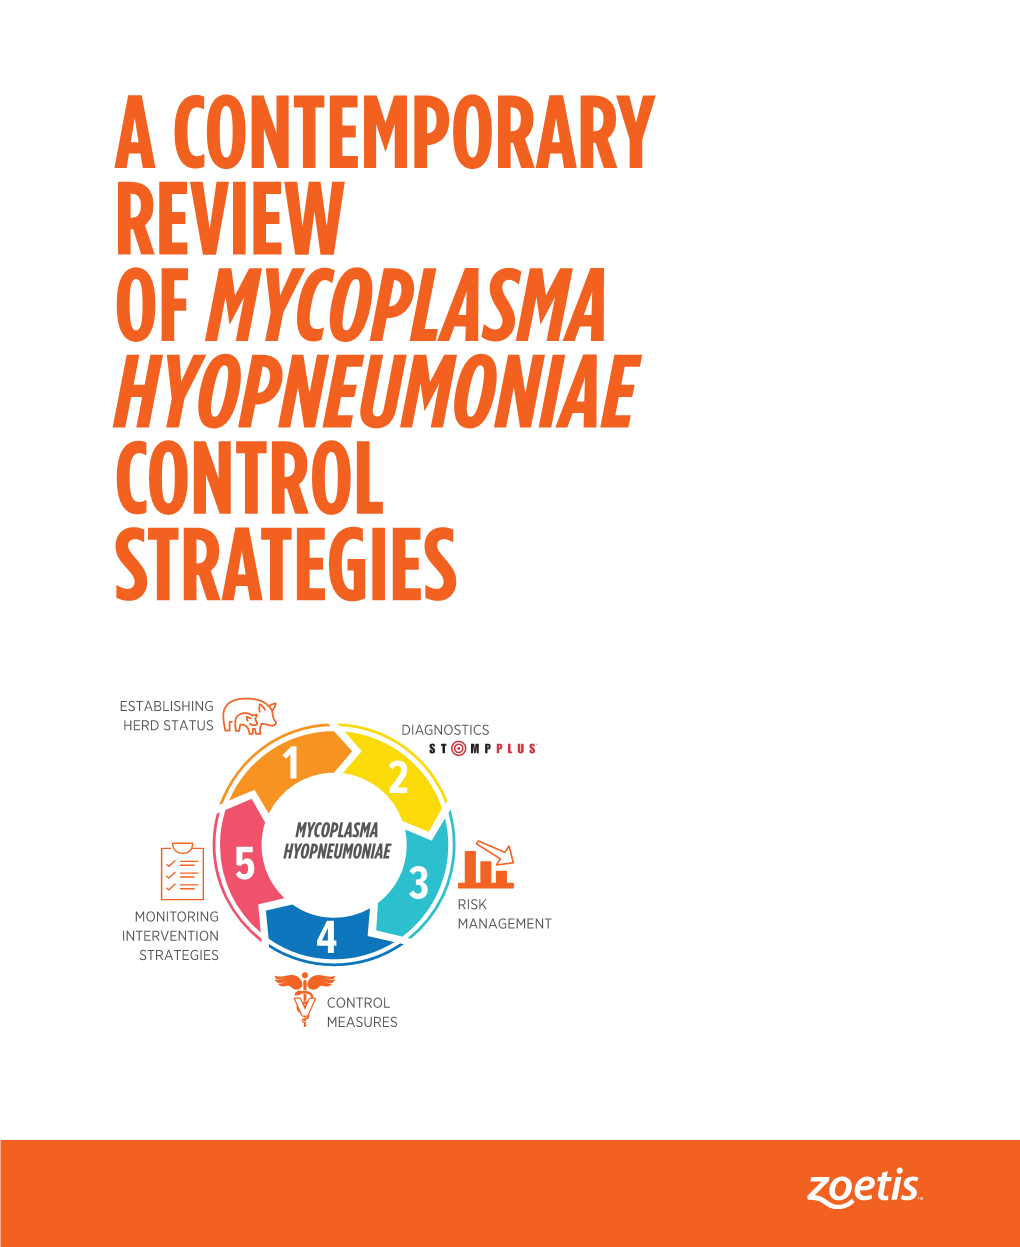 A Contemporary Review of Mycoplasma Hyopneumoniae Control Strategies